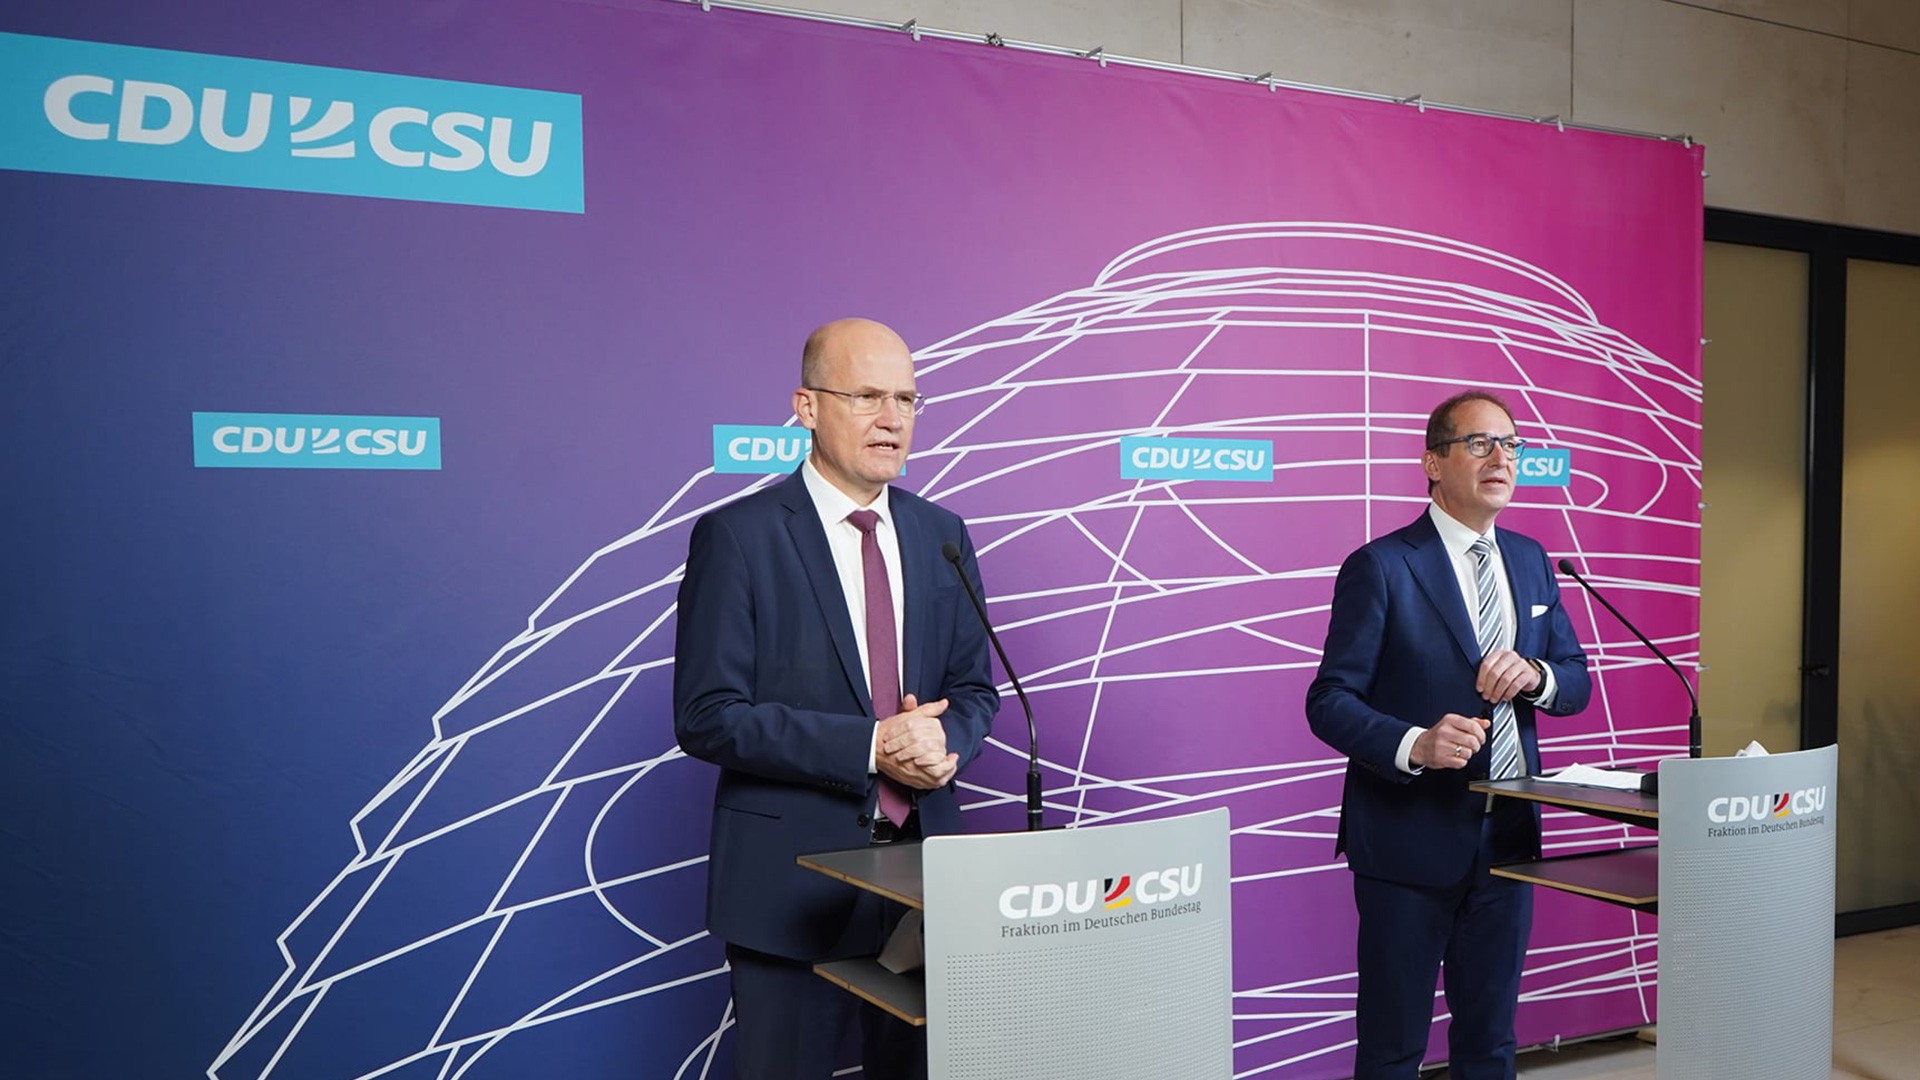 Presserückwand im neuen Corporate Design der CDU/CSU Bundestagsfraktion